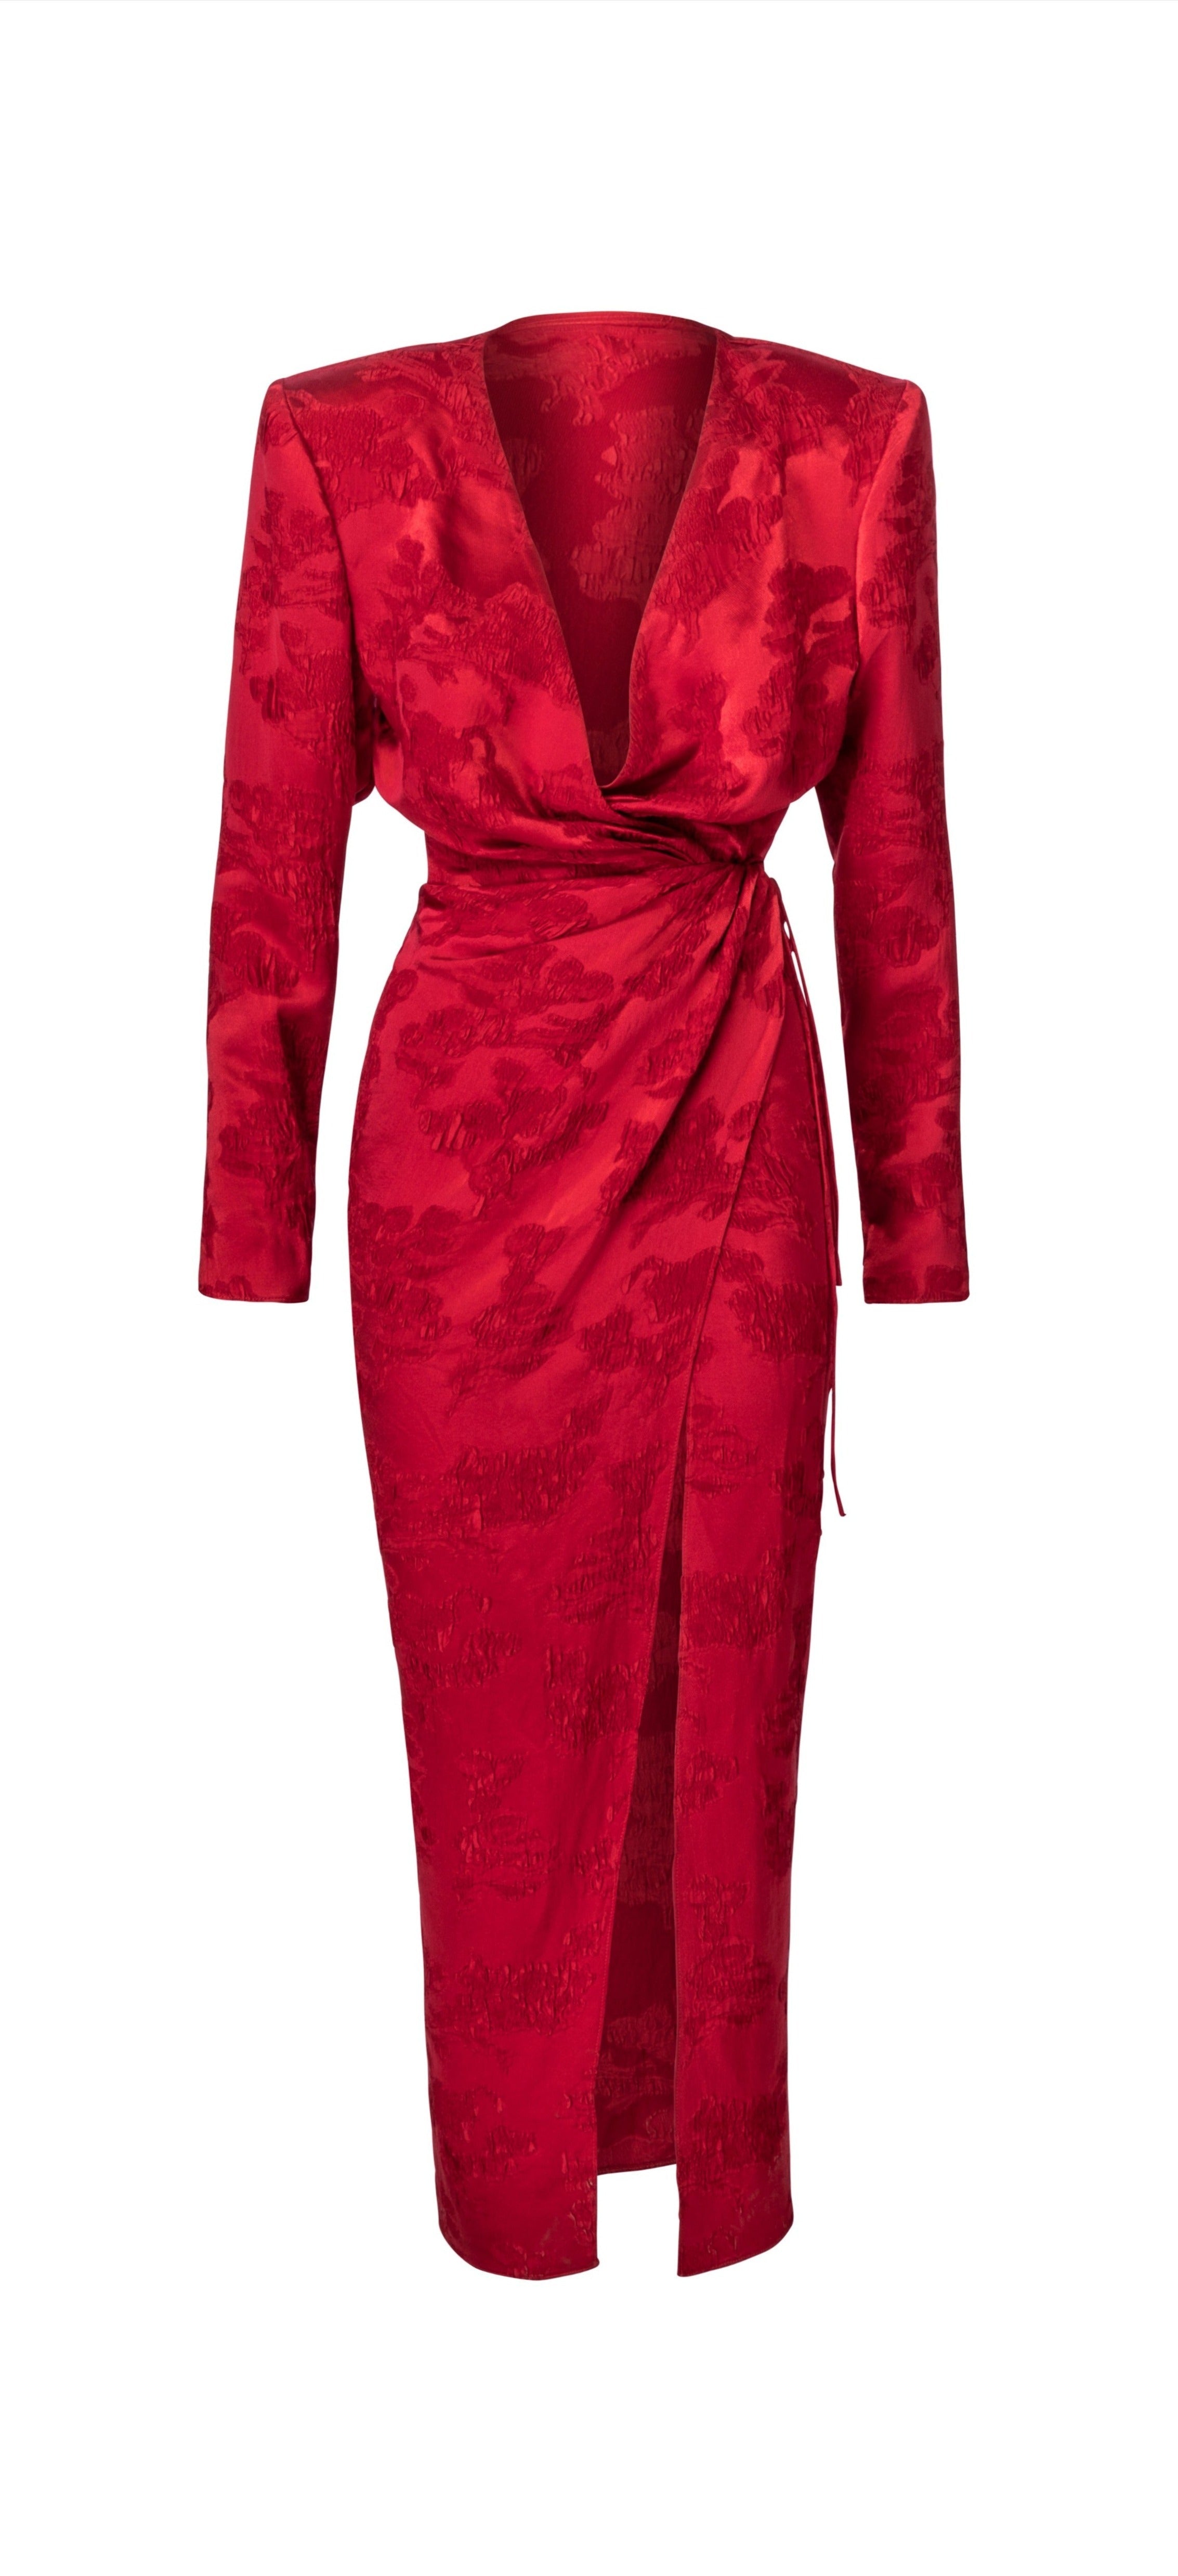 Afrodita Dress - Red Jacquard